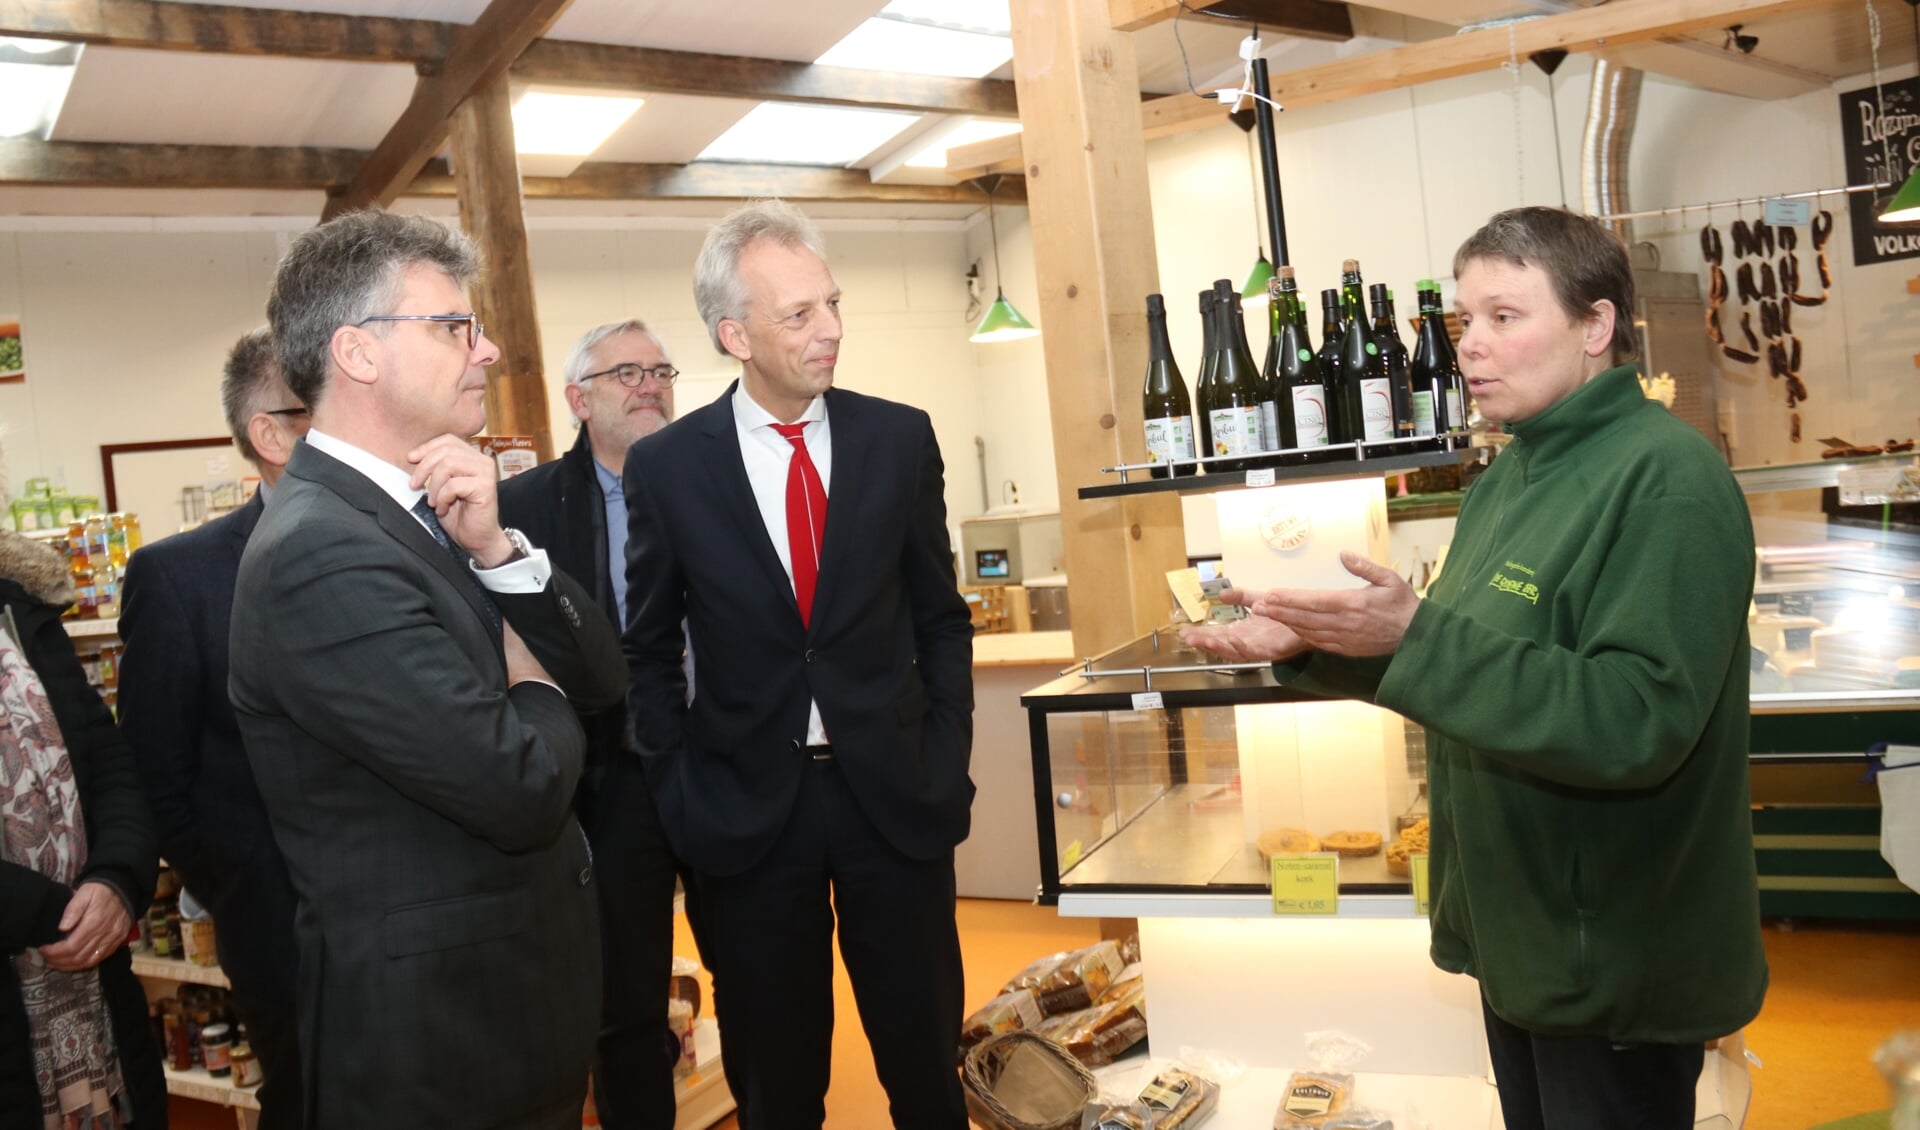 • Saskia Heikoop van De Groene Geer vertelde aan cdk Oosters en aan burgemeester Fröhlich vol passie over het biologische boerenbedrijf in Nieuwland. 